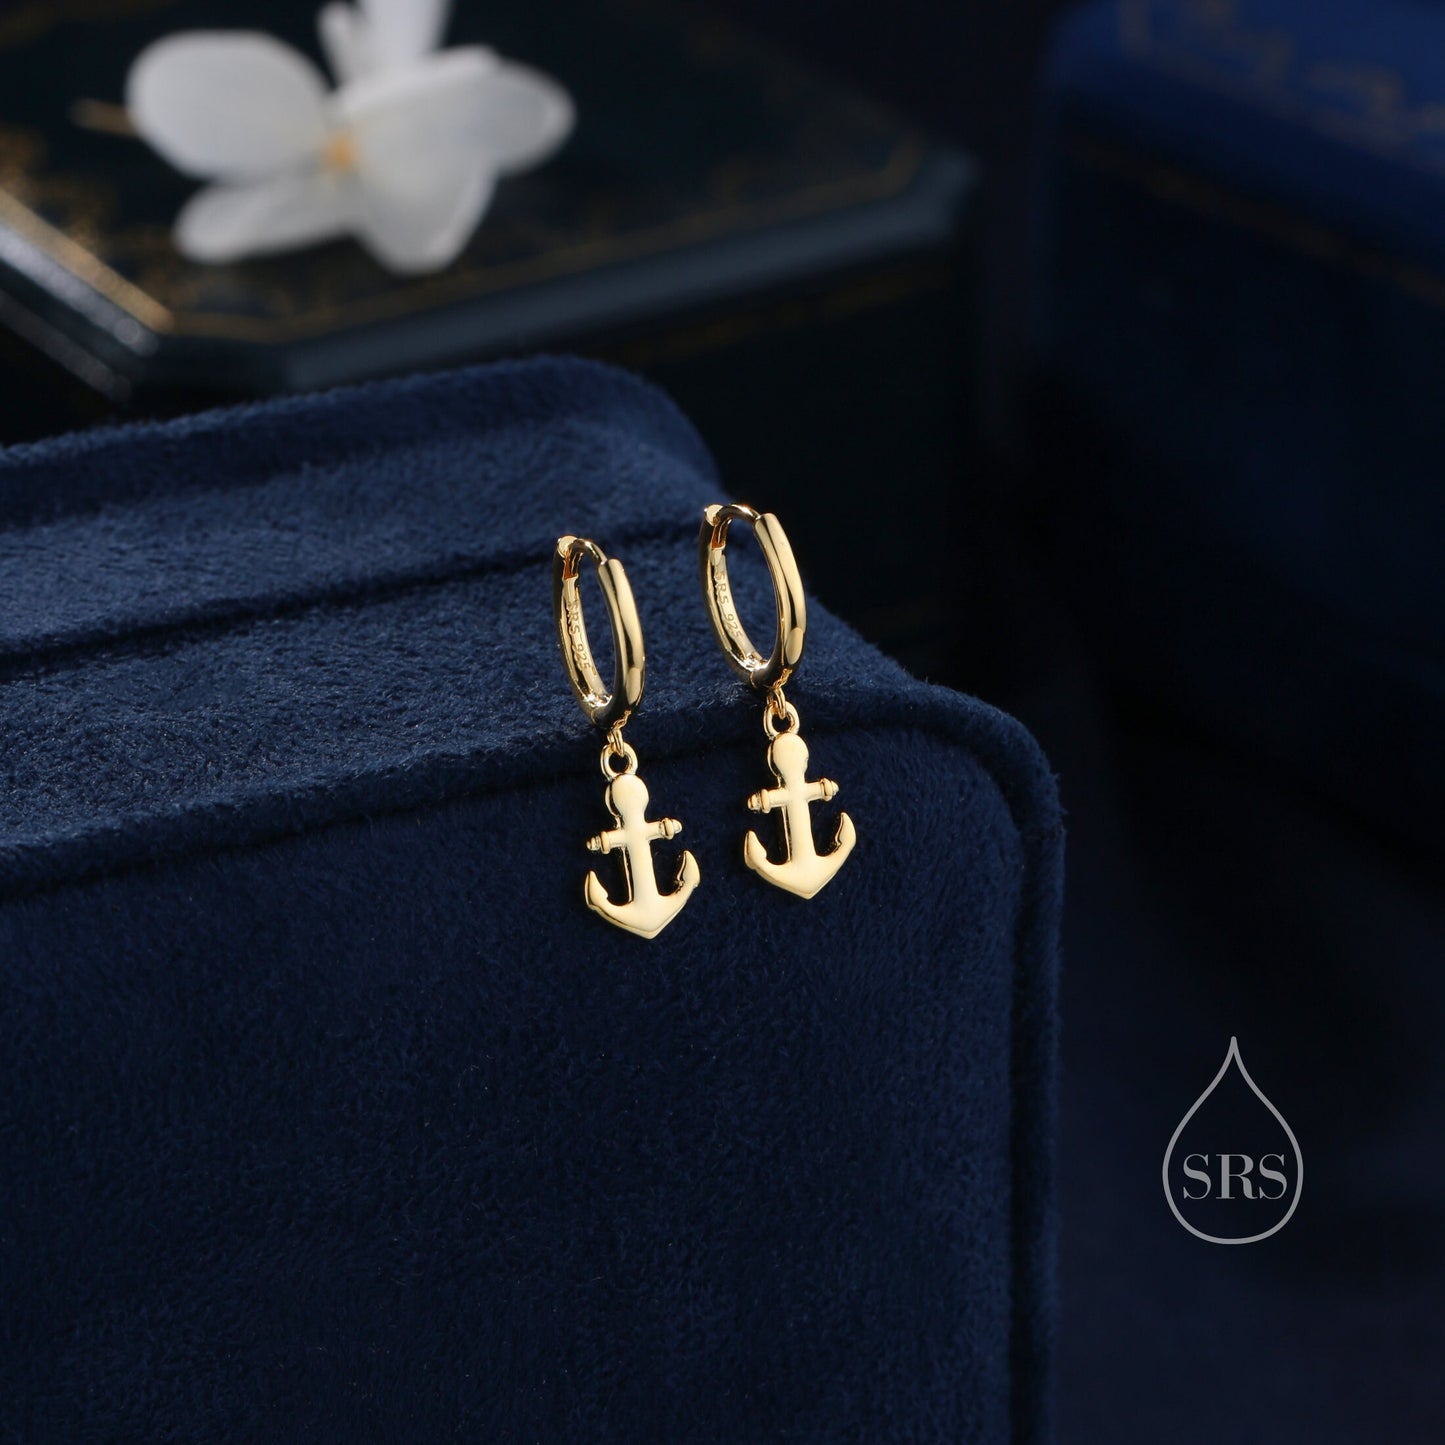 Anchor Huggie Hoop Earrings in Sterling Silver, Silver or Gold or Rose Gold, Tiny Anchor Earrings, Nautical Ocean Theme Earrings